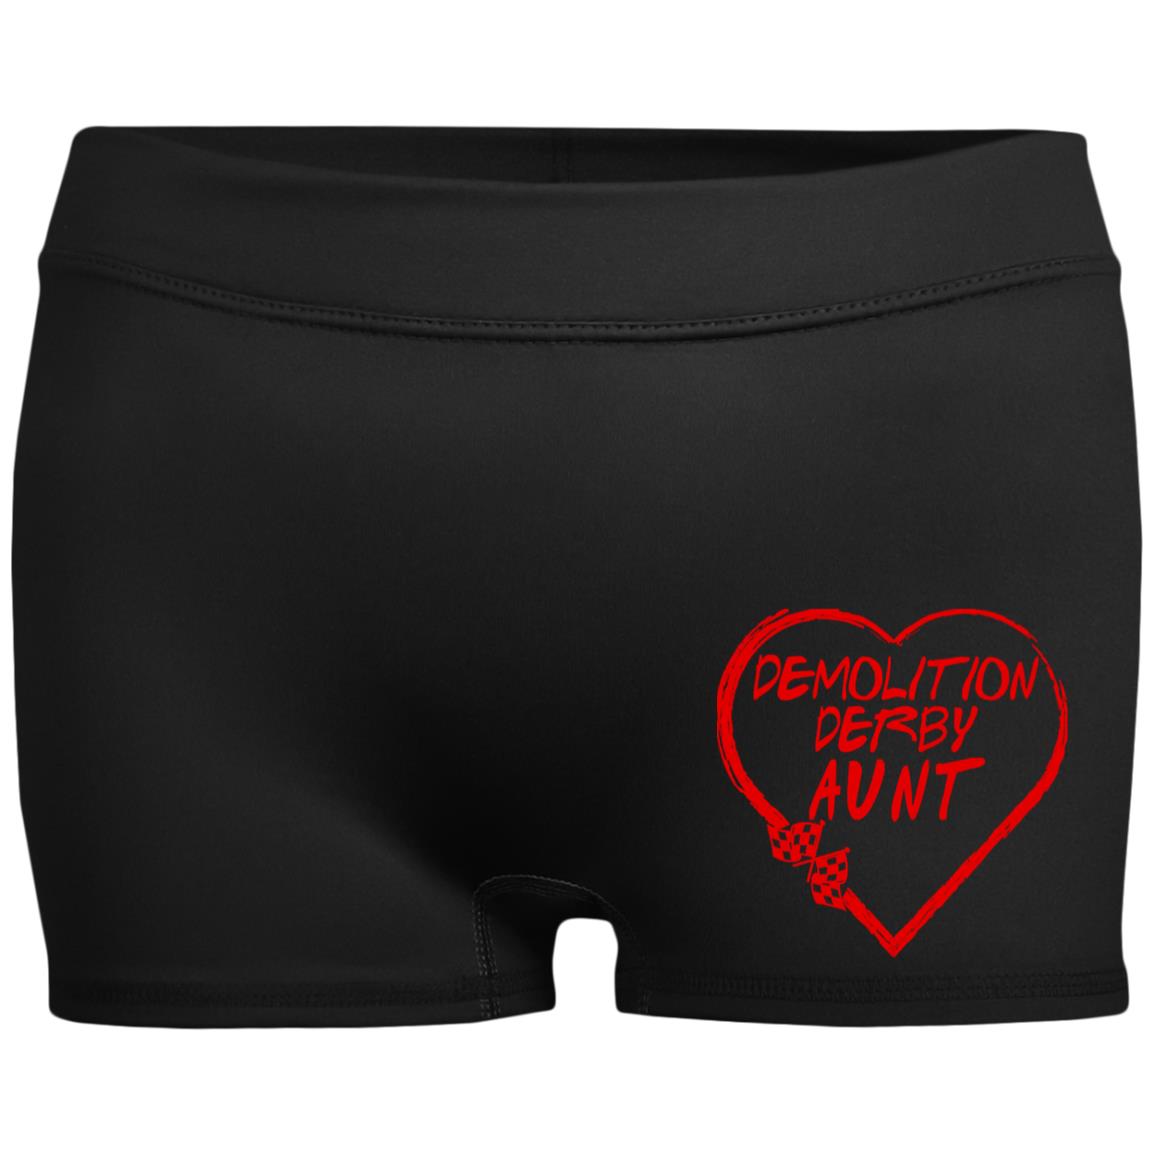 Demolition Derby Aunt Heart Ladies' Fitted Moisture-Wicking 2.5 inch Inseam Shorts